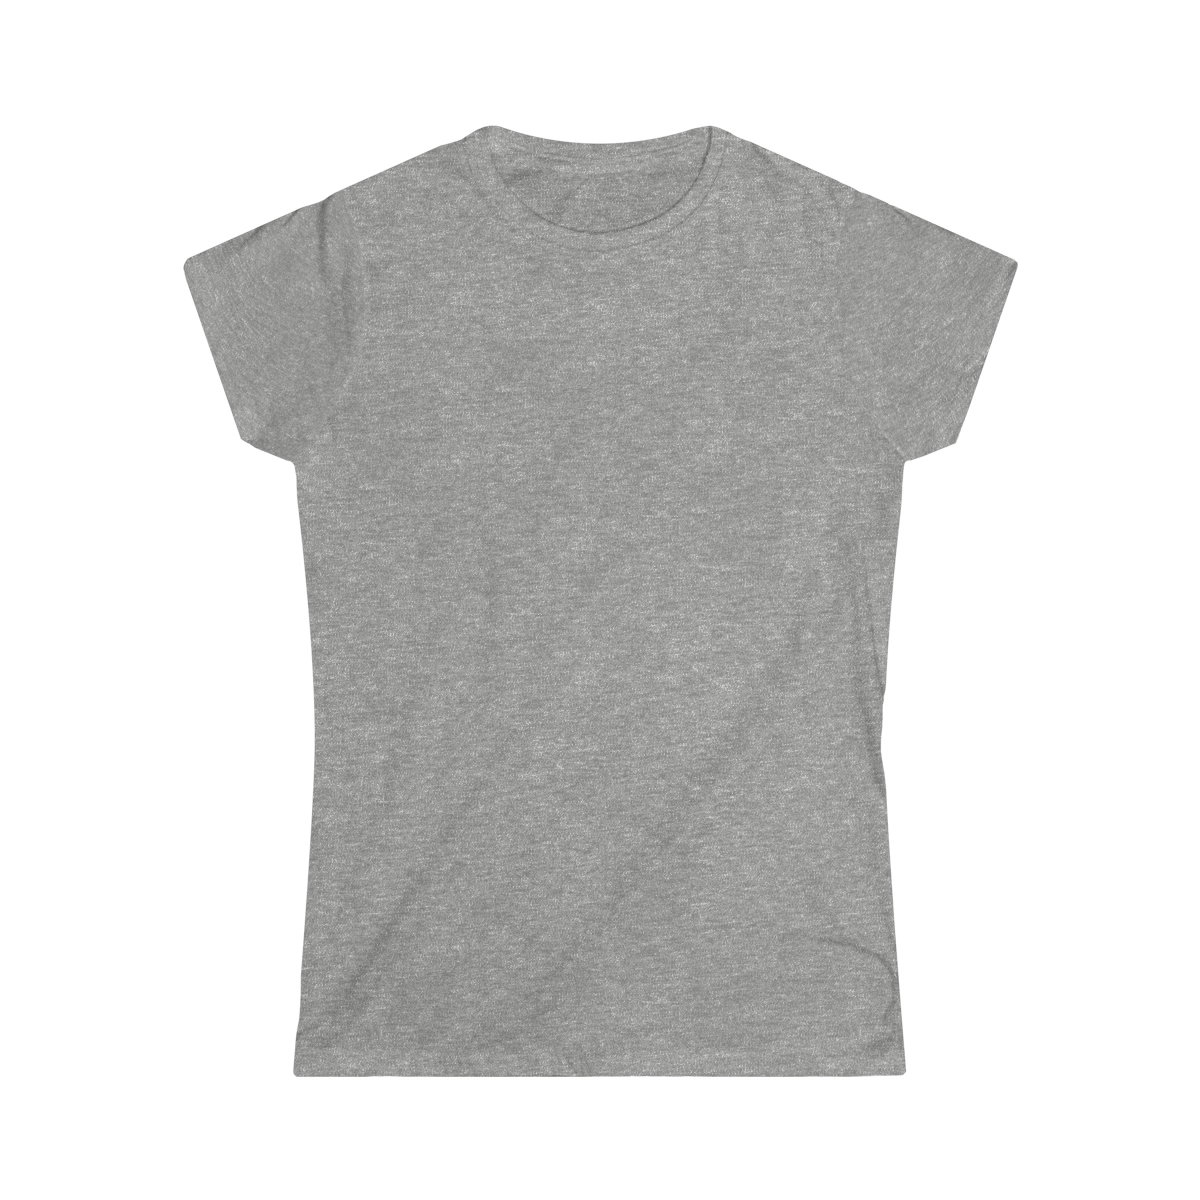 T-shirt Femme Personnalisé Softstyle